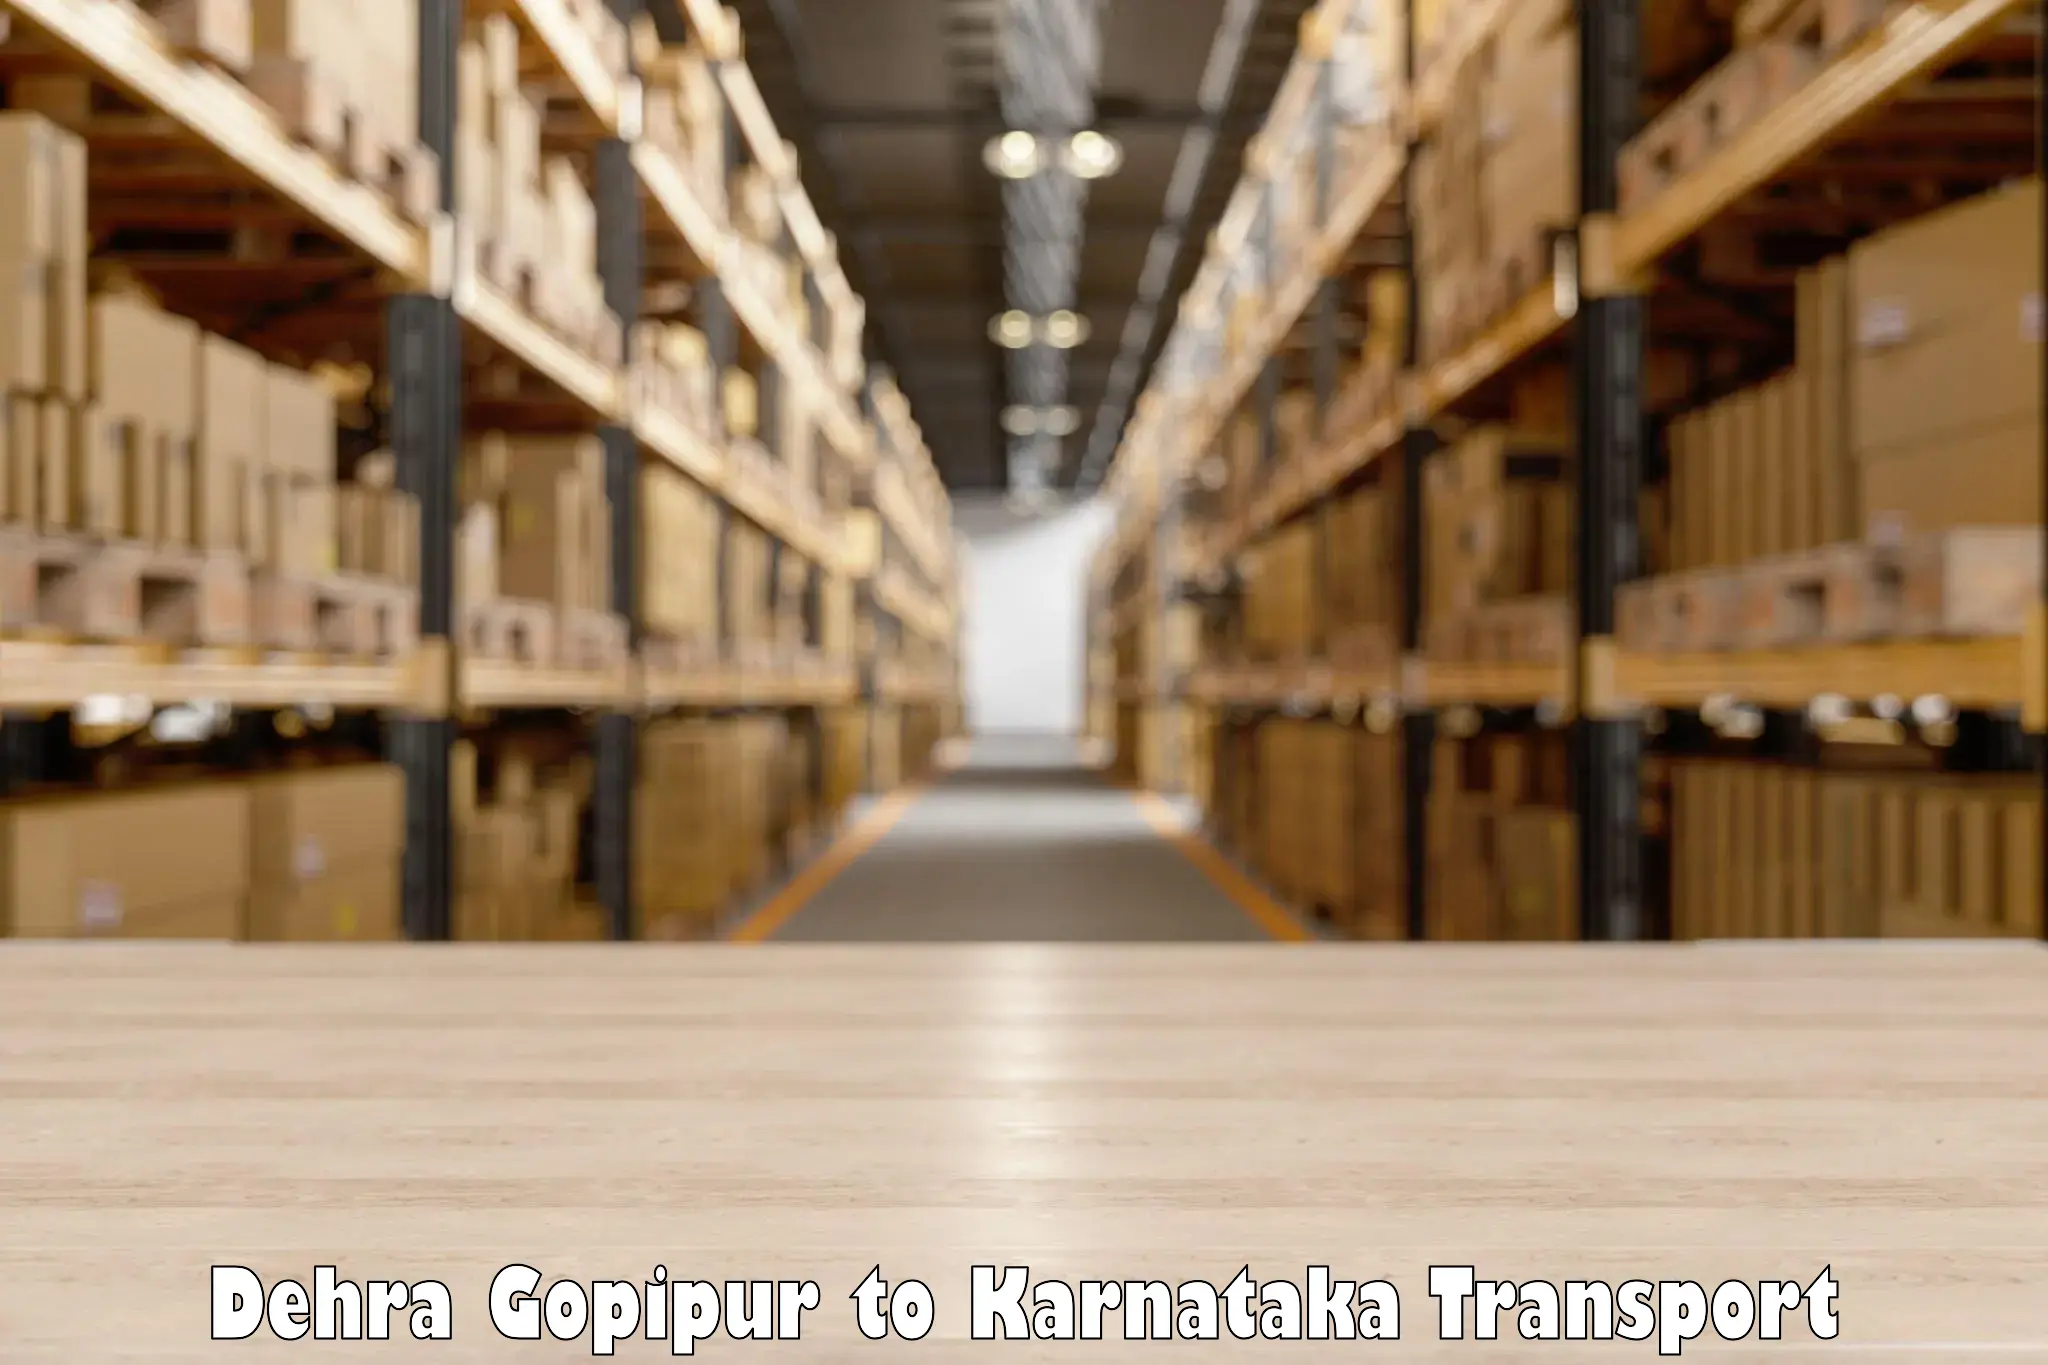 Container transport service Dehra Gopipur to Ukkadagatri